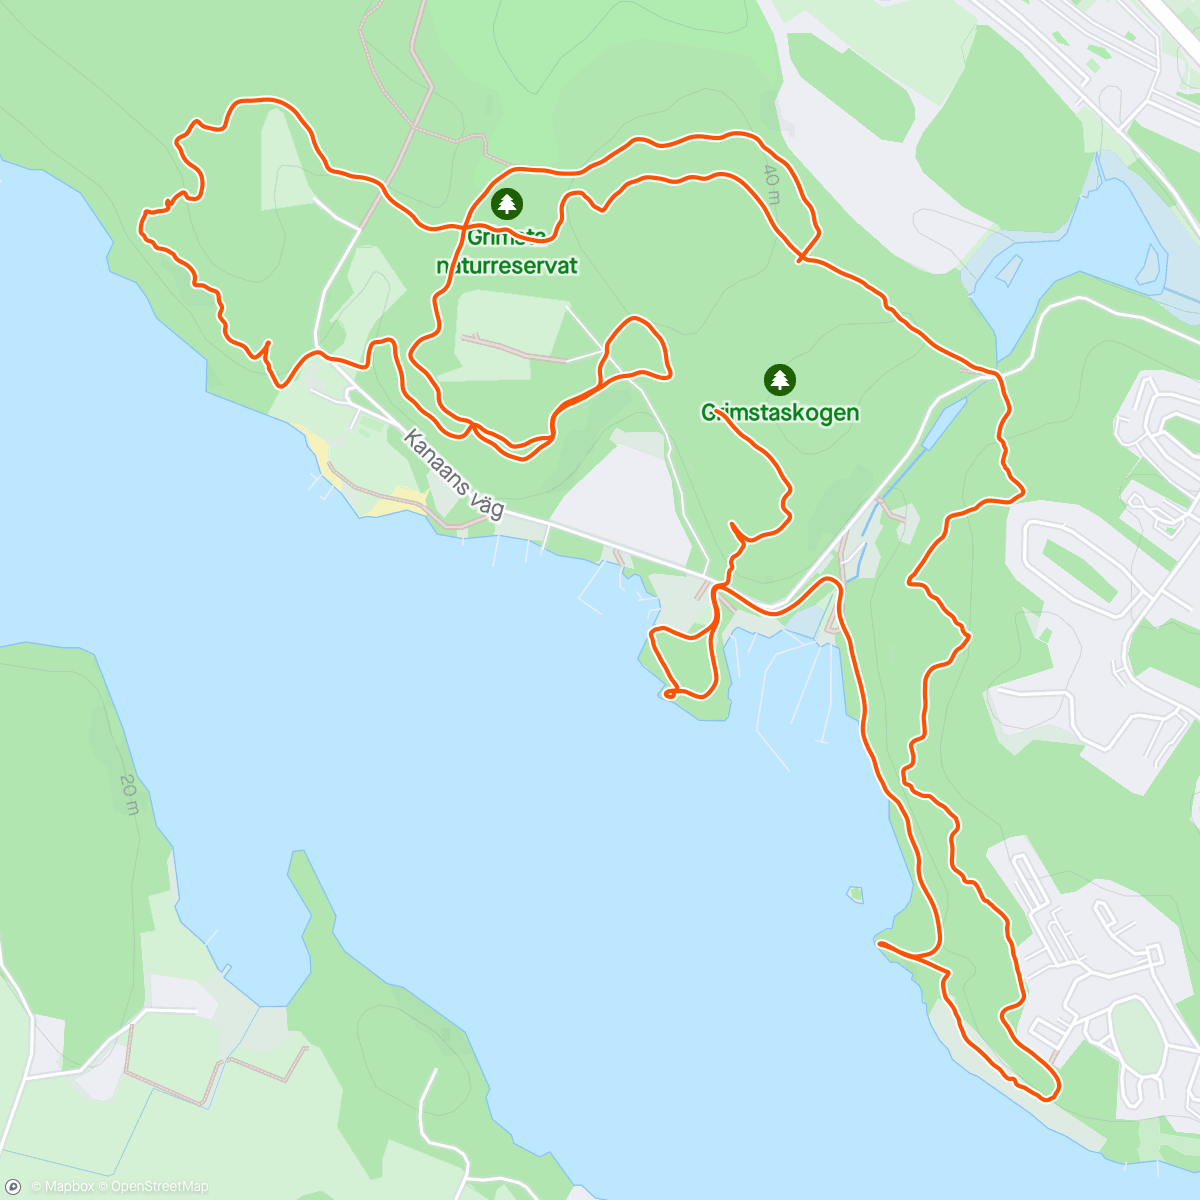 Map of the activity, Upp&ner för bergen med ÄR